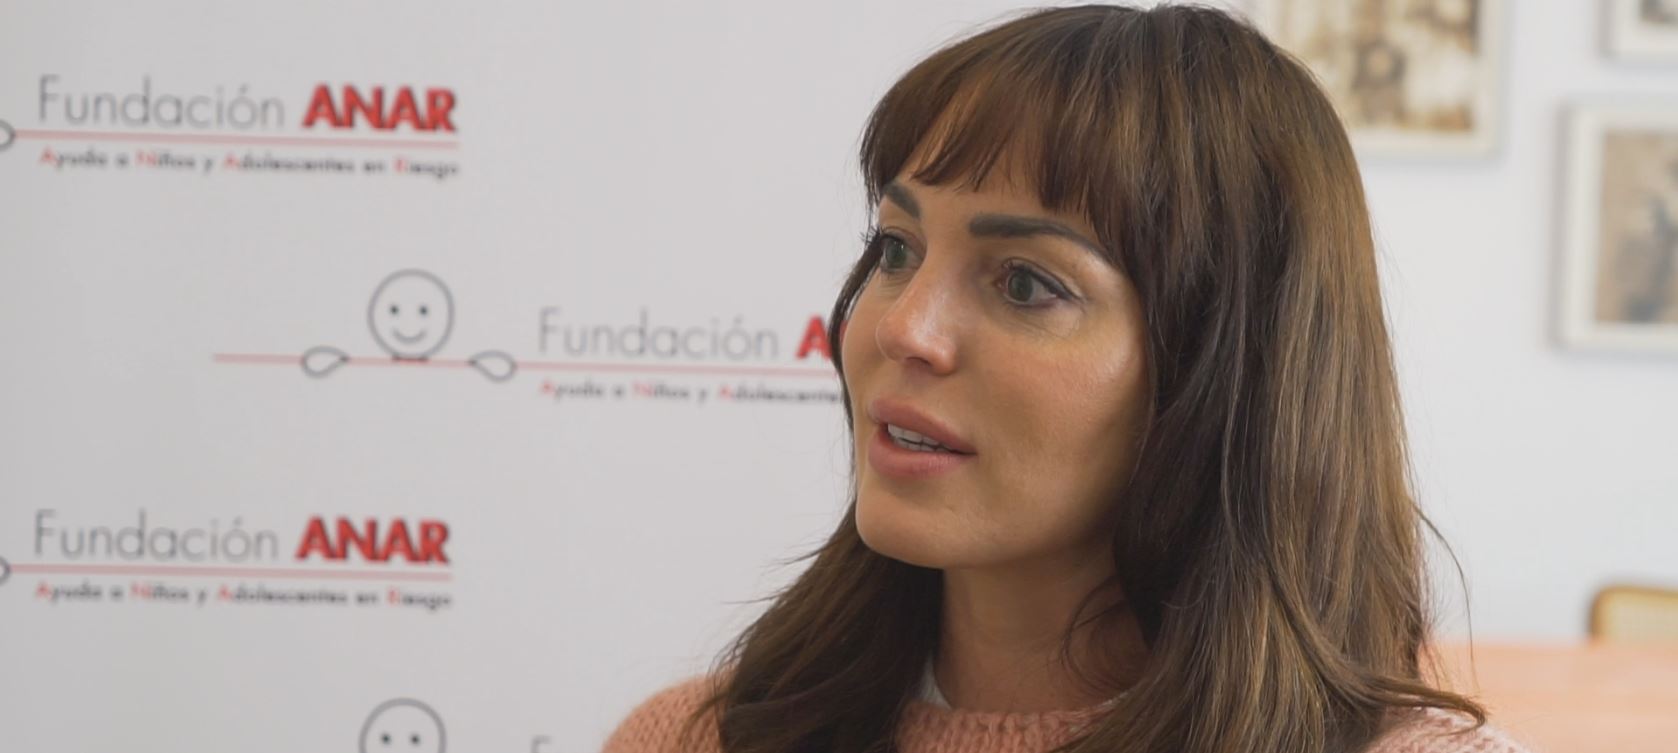 Marta Milans, nueva embajadora de la Fundación ANAR